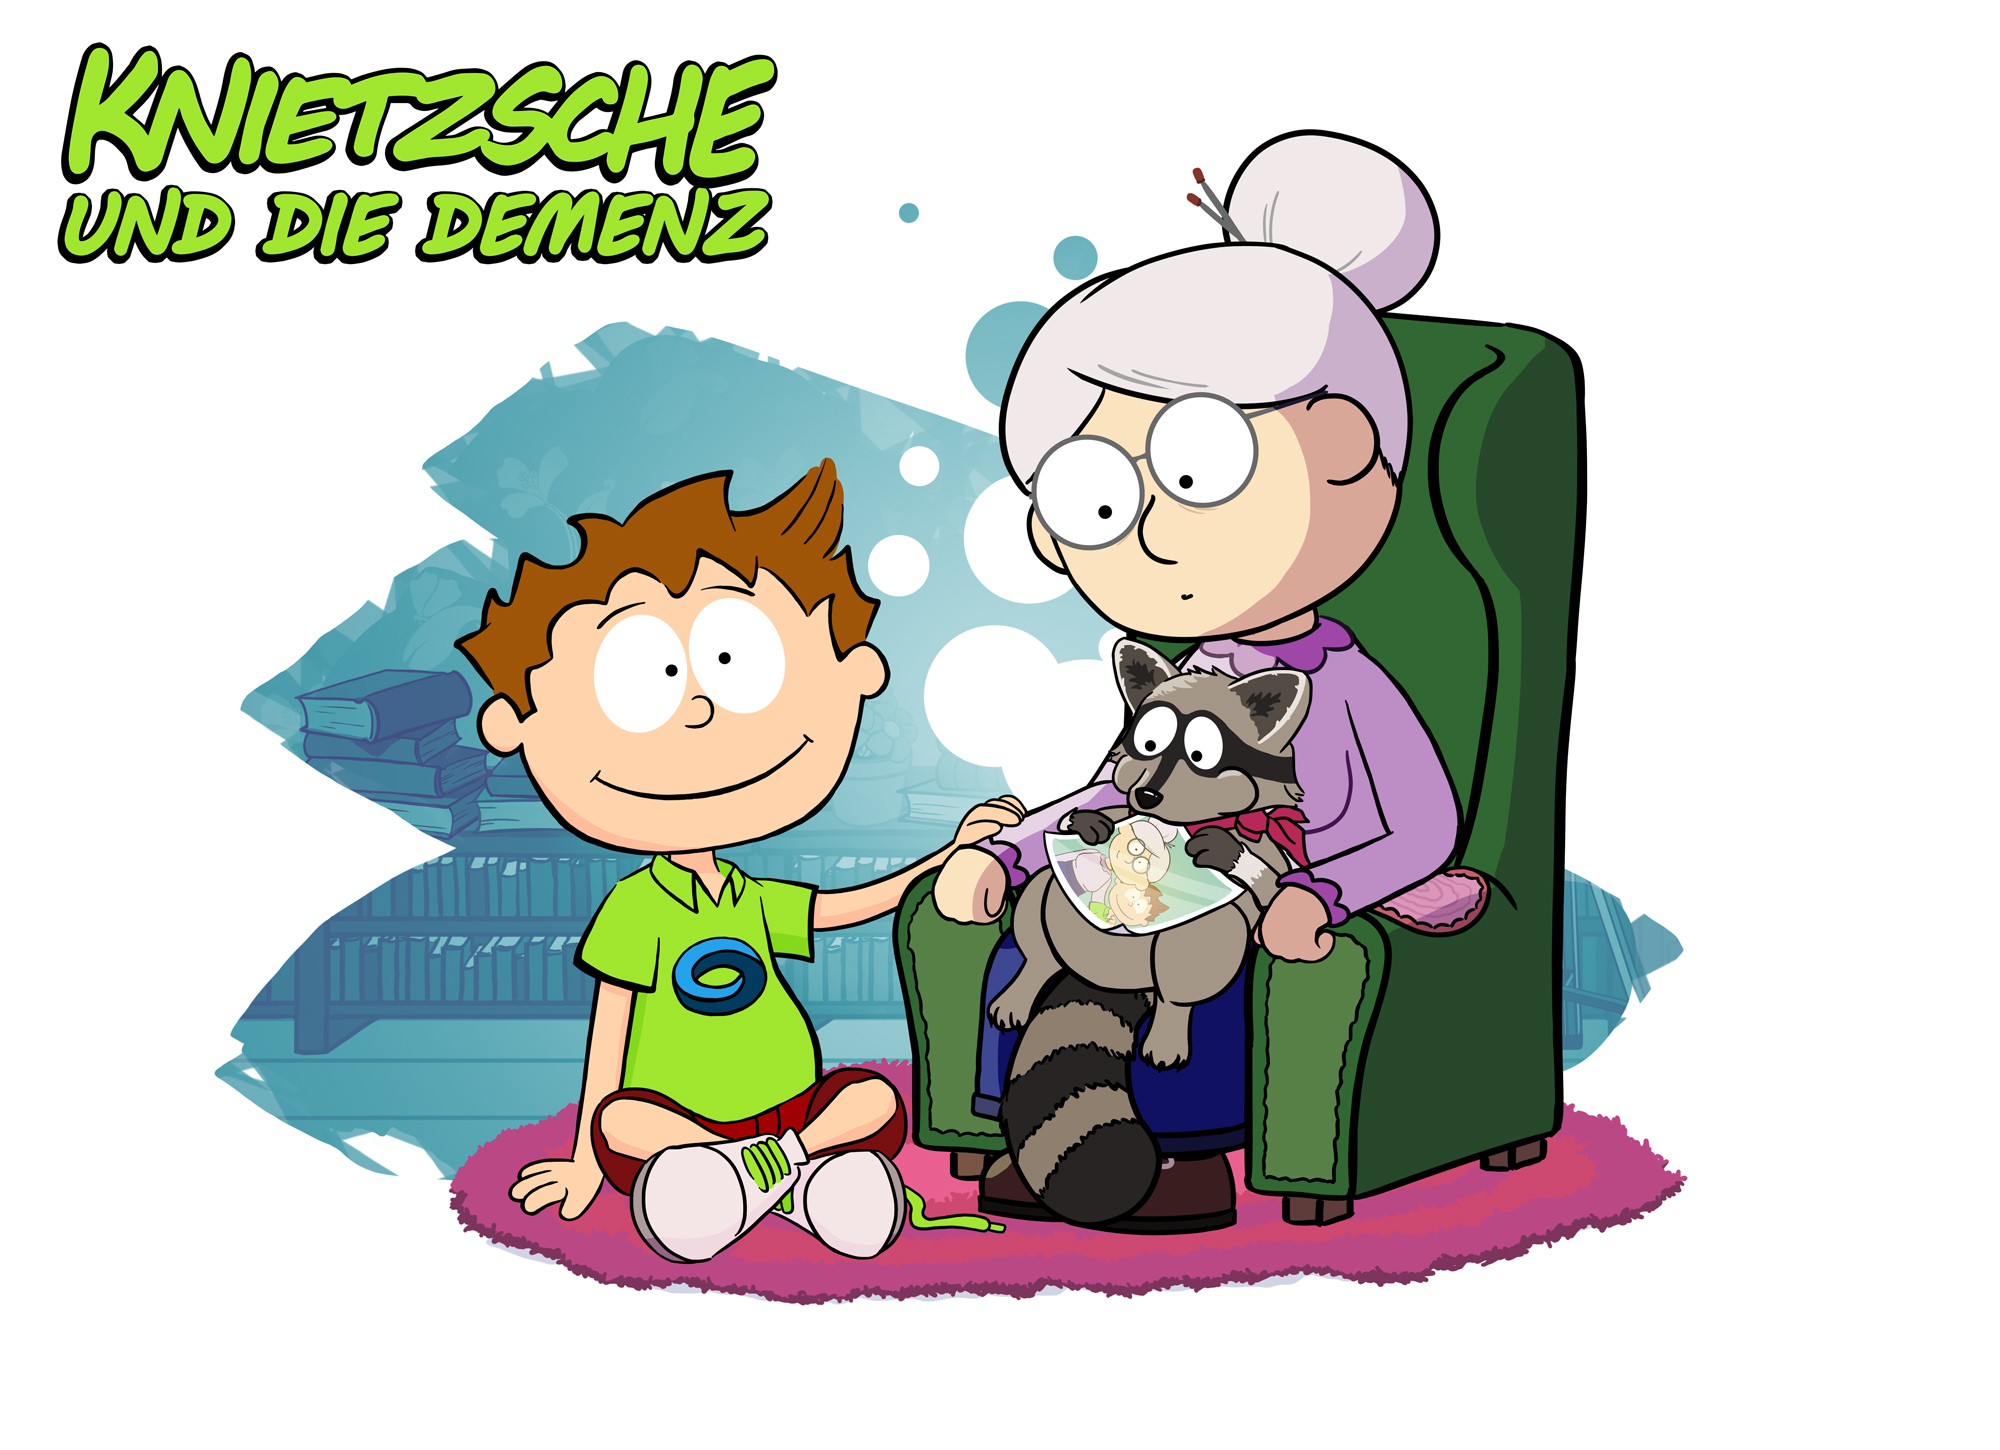 Vorschaubild des Online-Ratgebers für Kinder "Knietzsche". "Knietzsche" sitzt auf dem Boden, seine Oma auf einem Sessel neben ihm. 